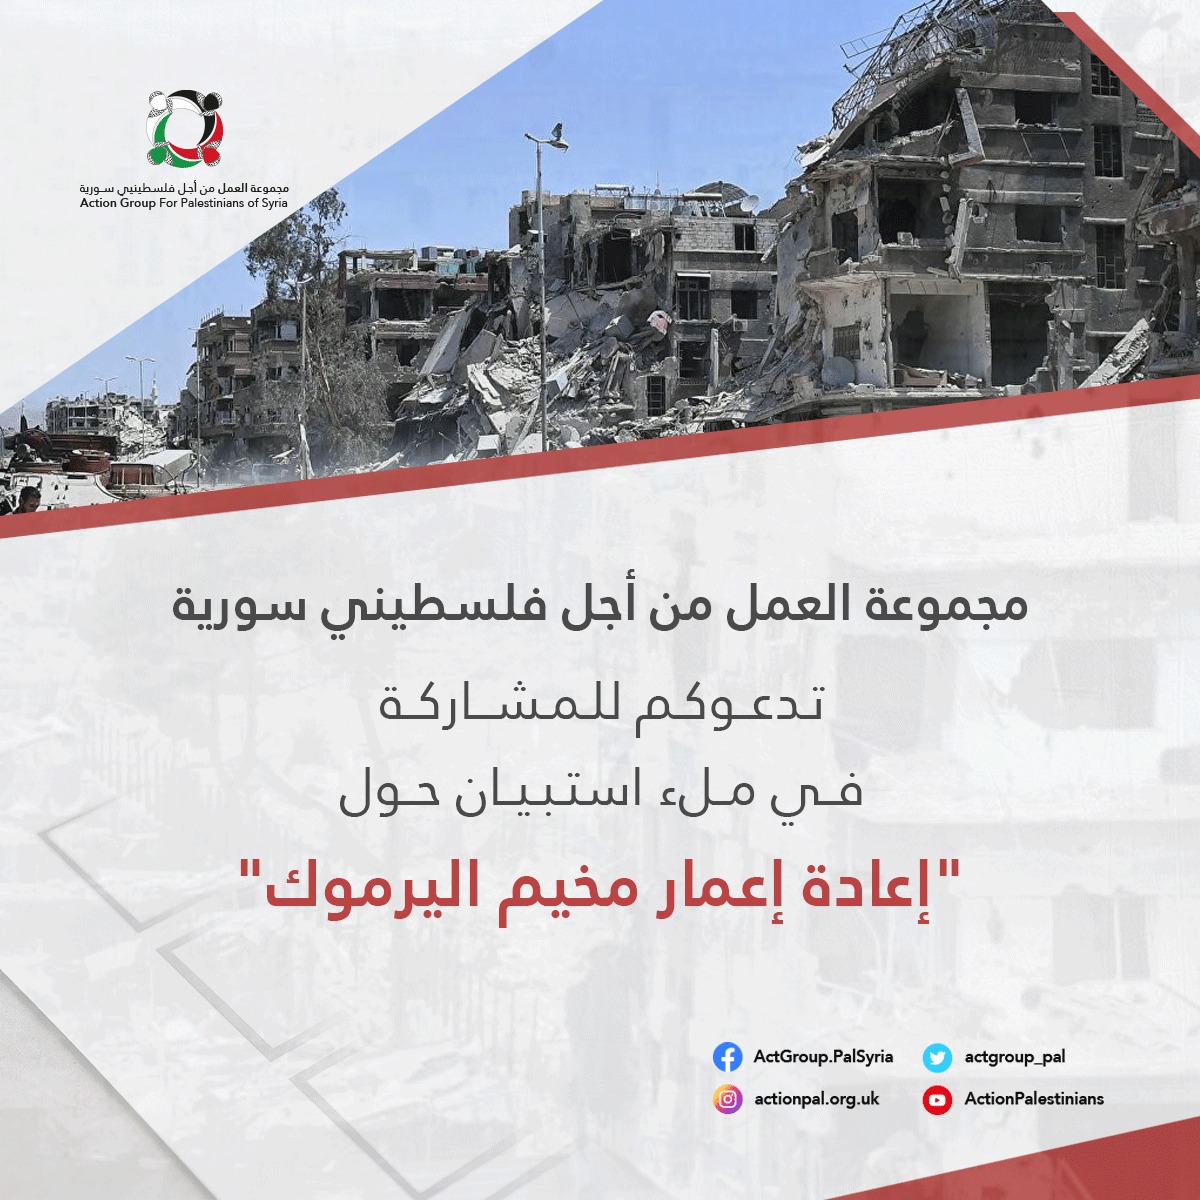 مجموعة العمل: تدعو للمشاركة في ملء استبيان حول "إعادة إعمار مخيم اليرموك"